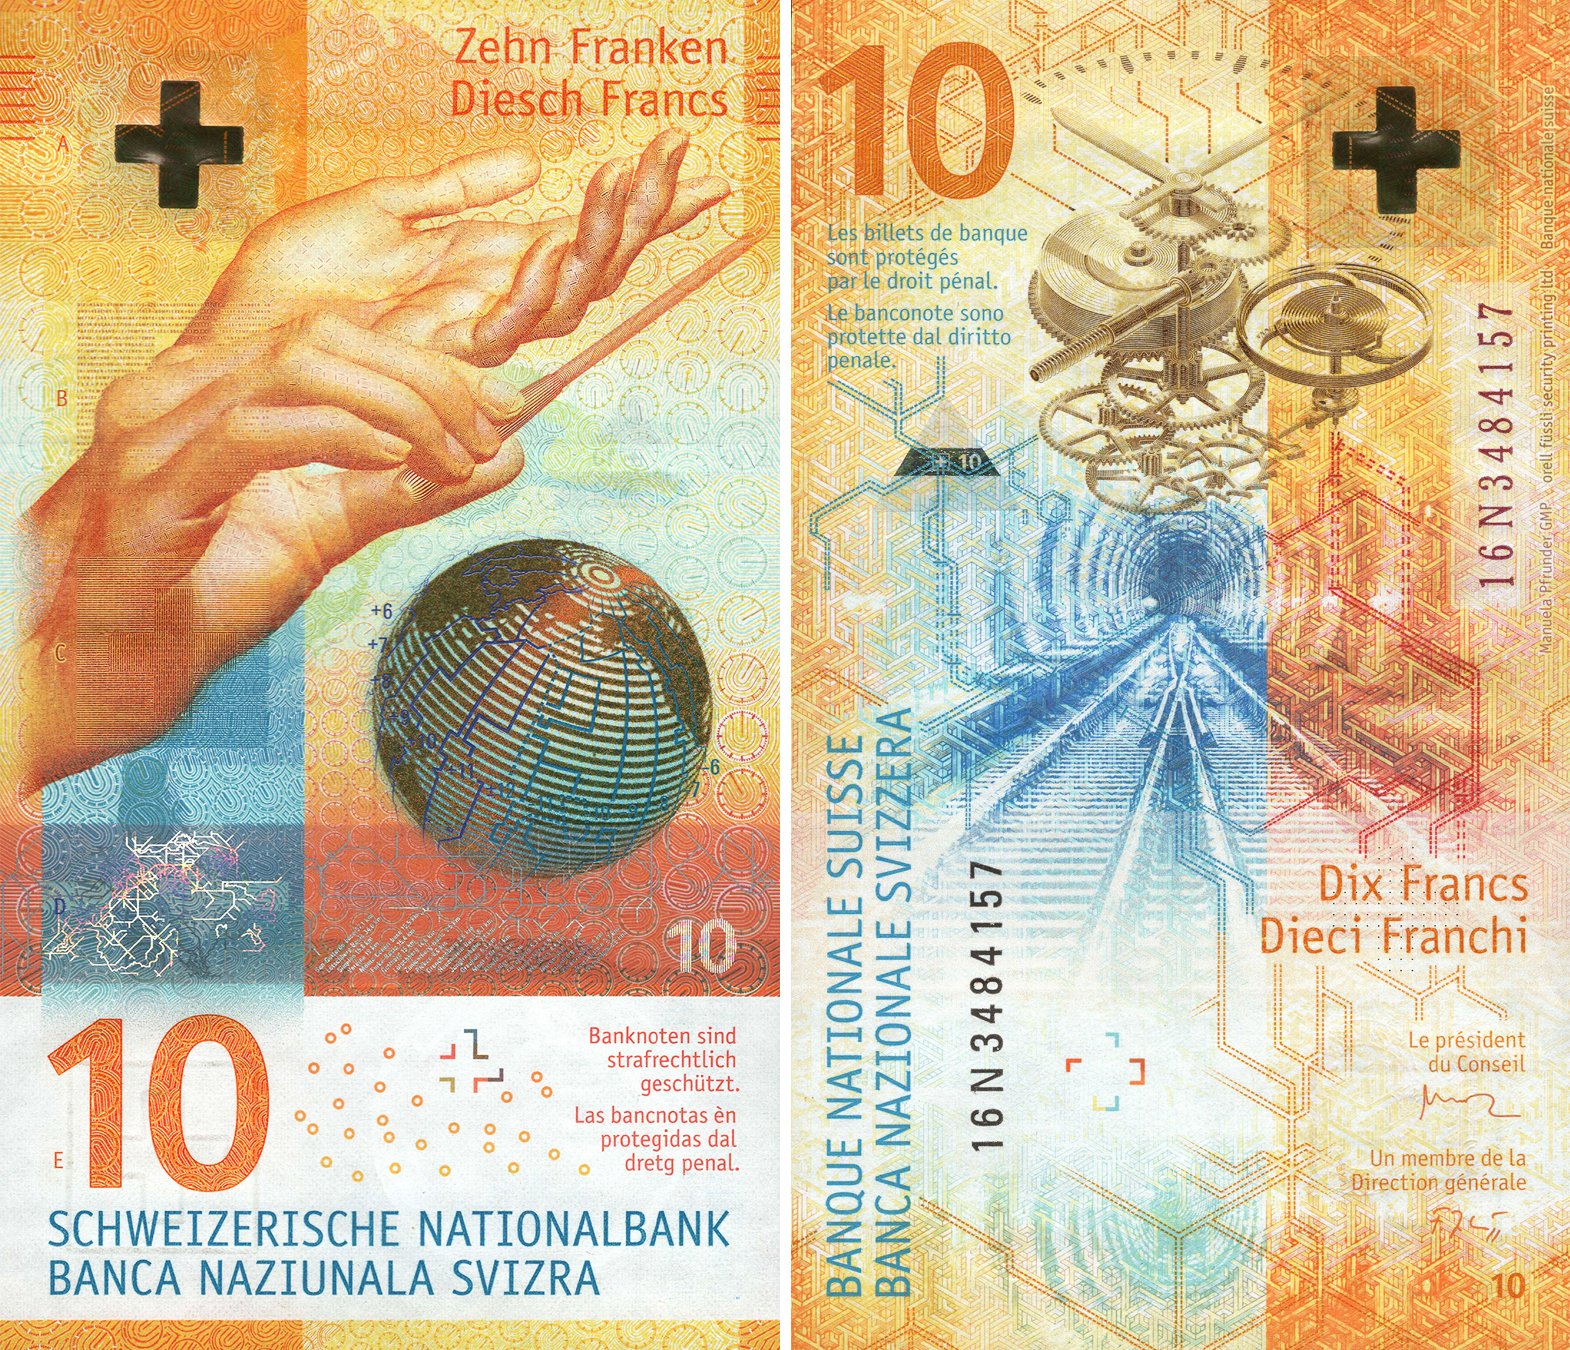 Банкіры назвалі найлепшую купюру ў свеце — 10 швейцарскіх франкаў